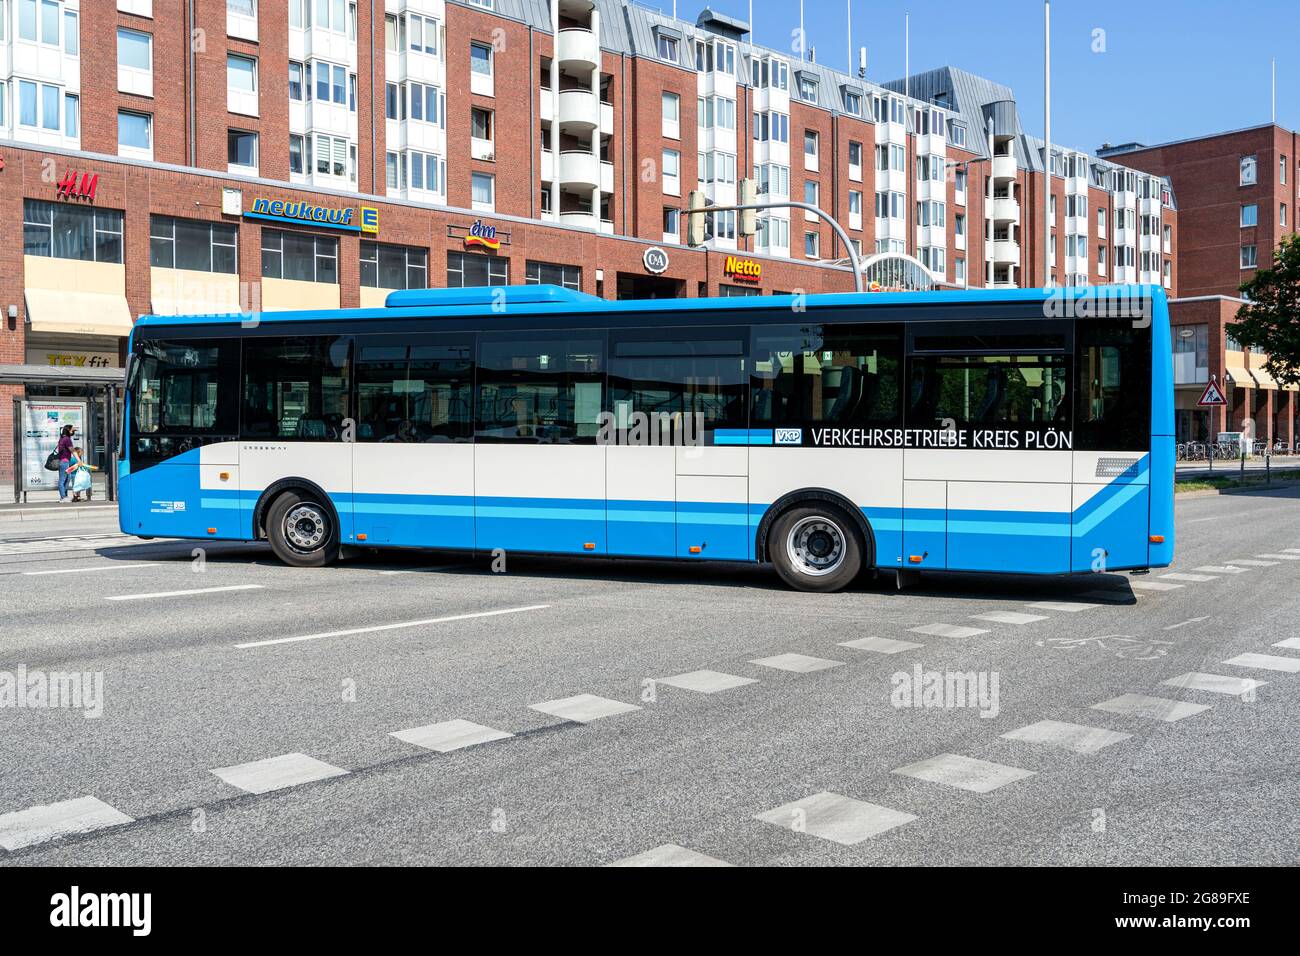 VKP Verkehrsbetriebe Kreis Plön Iveco Crossway bus in Kiel, Germany Stock Photo